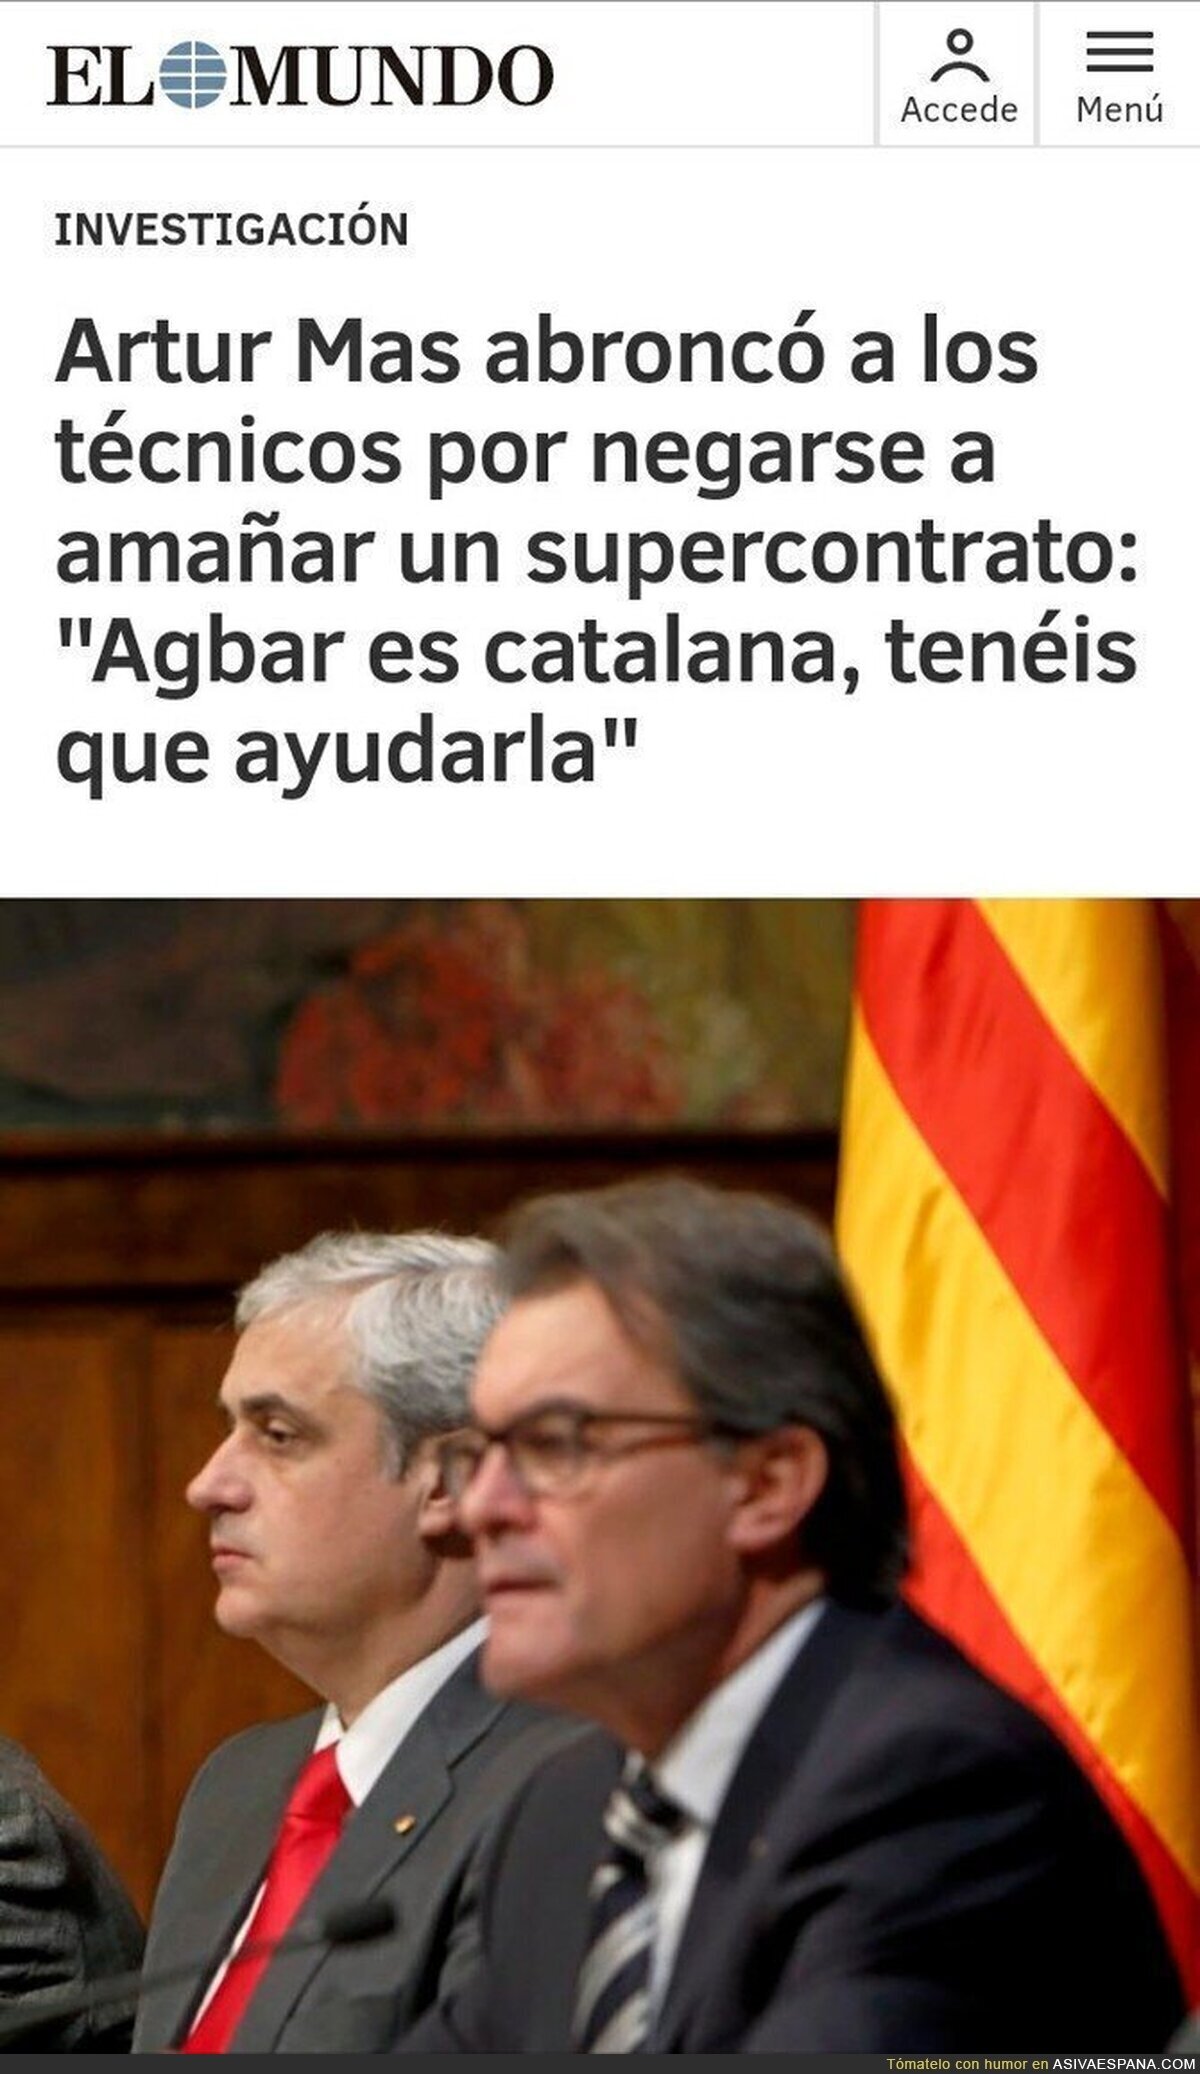 "Espanya ens roba....corrupció espanyola"